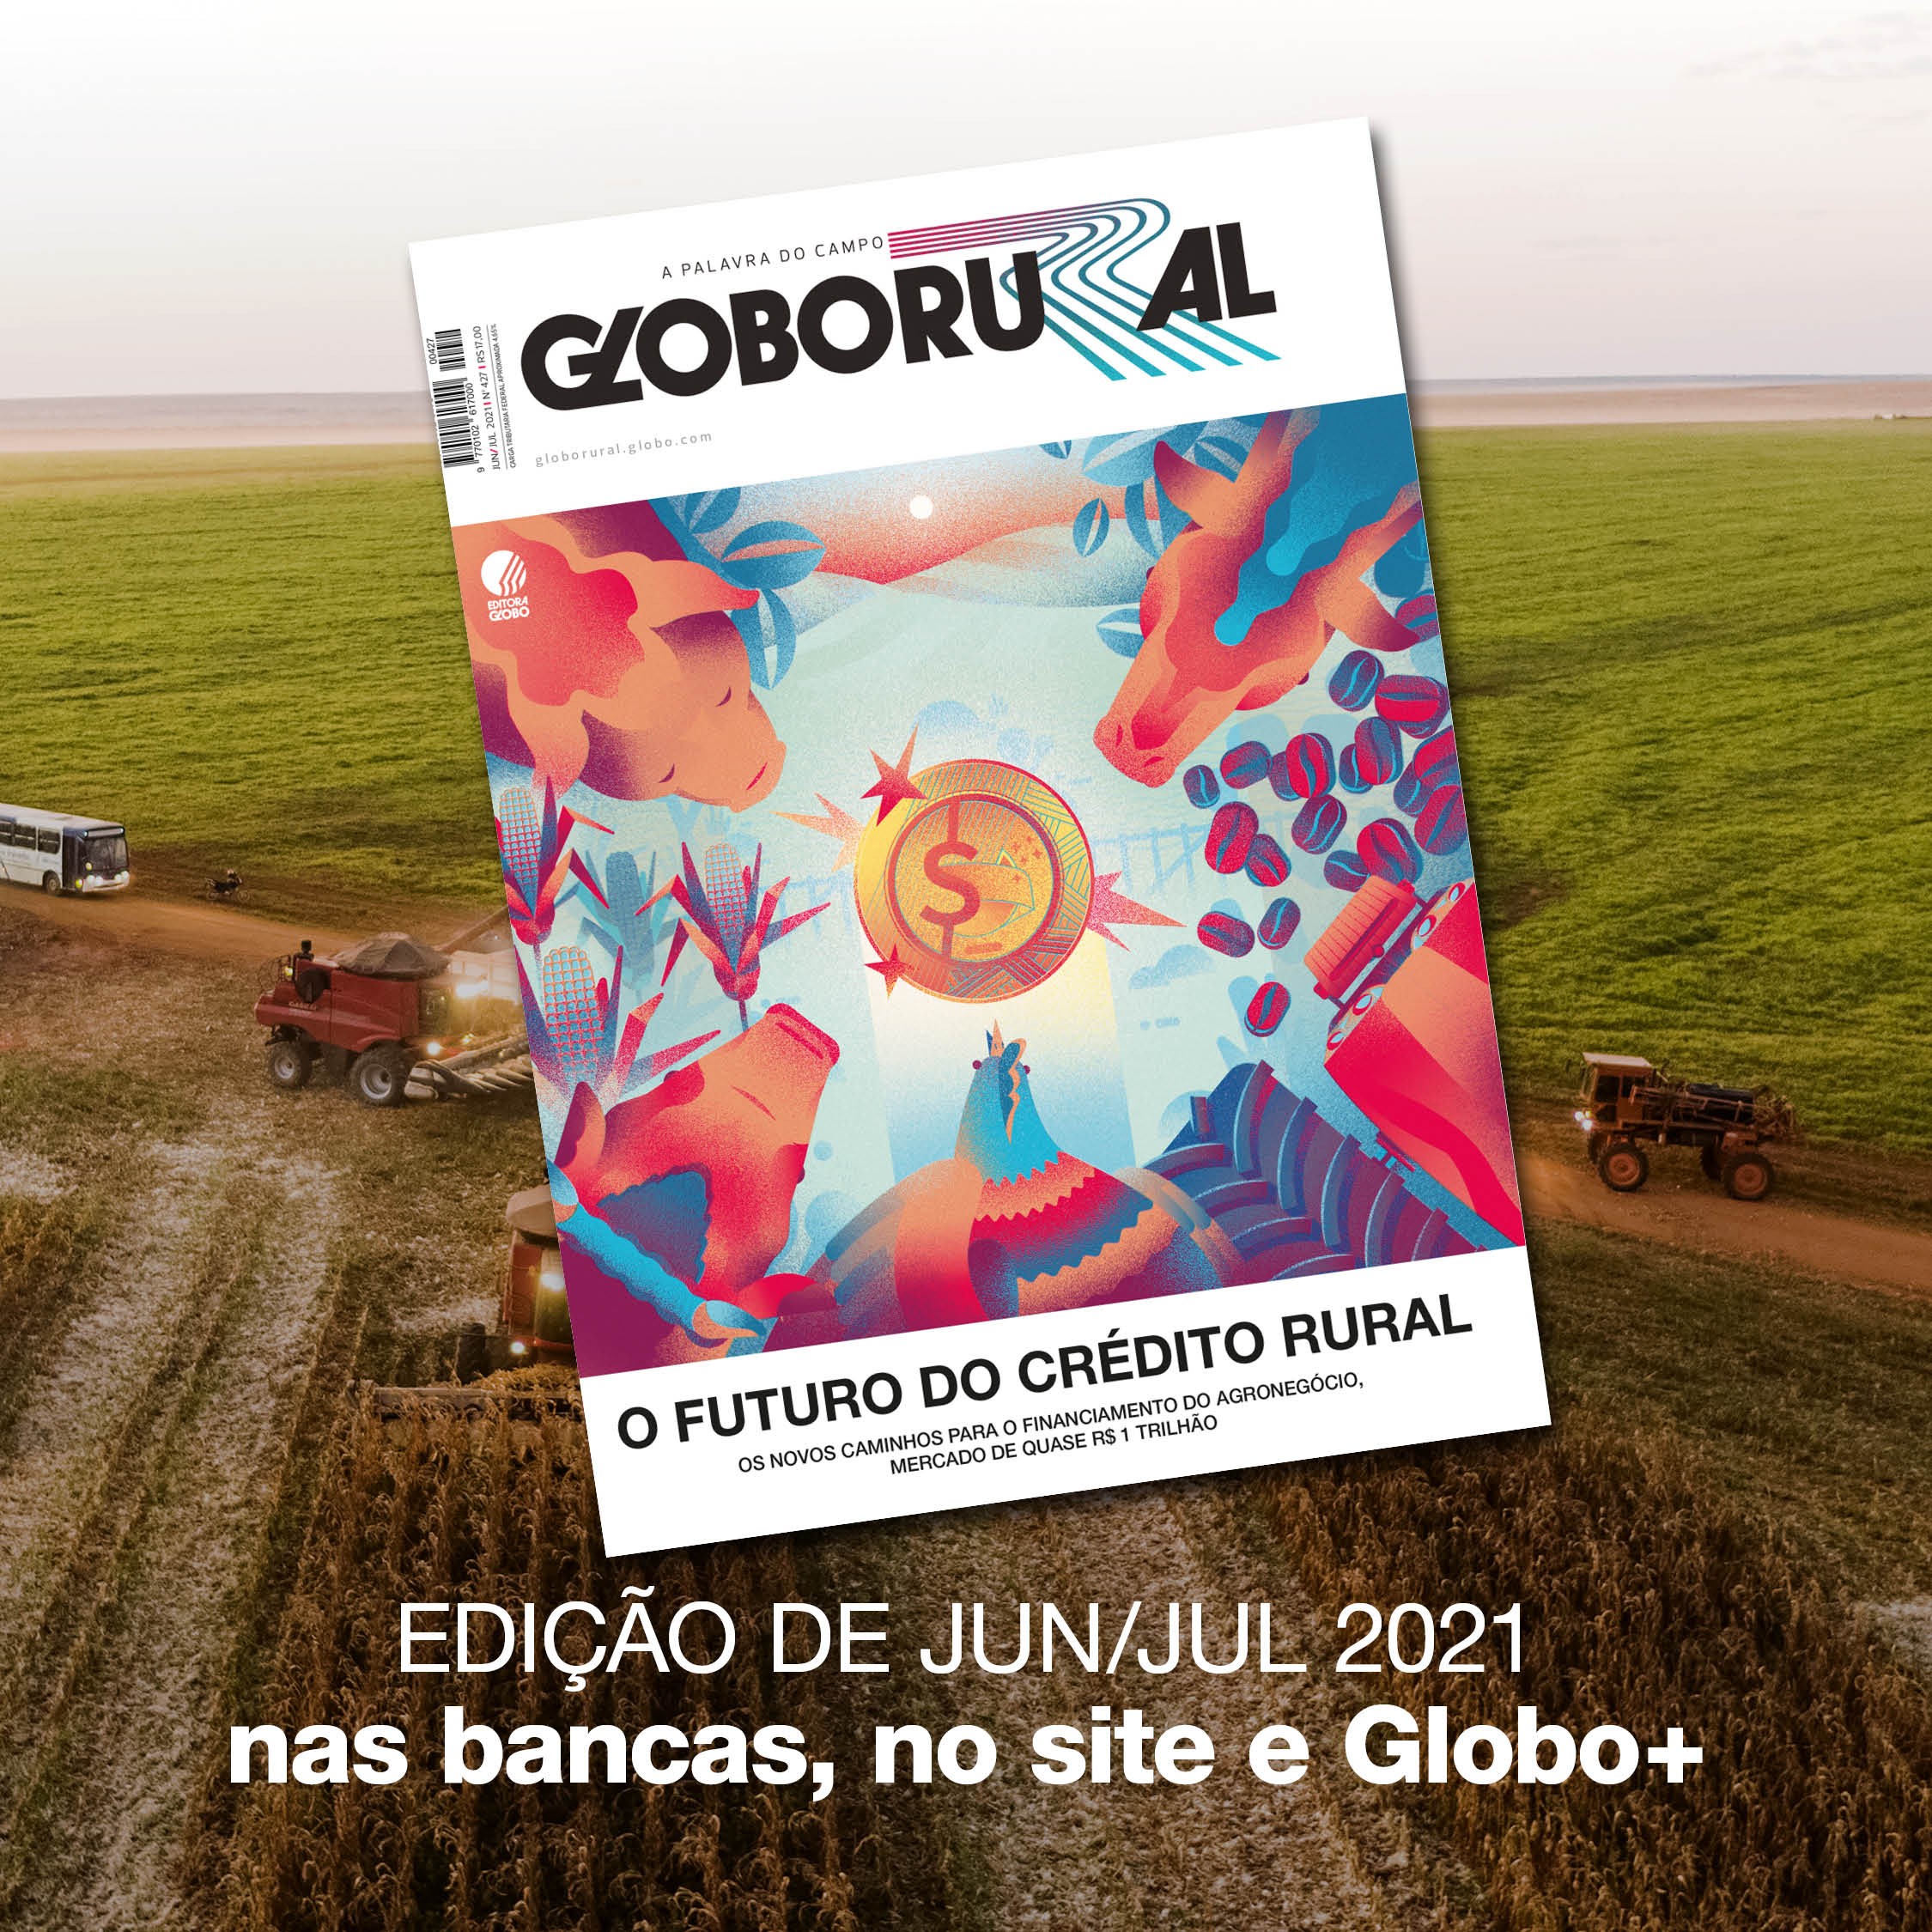 Agro mais sustentável é destaque na edição de outubro da Globo Rural -  Revista Globo Rural